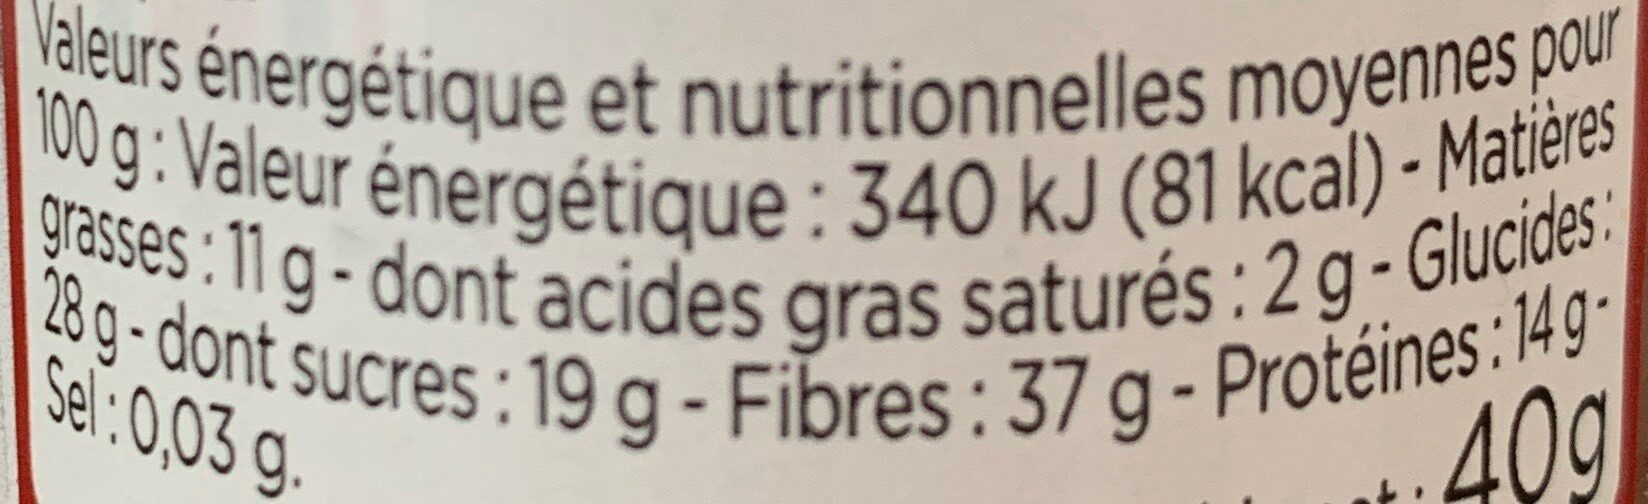 Piment d'espelette AOP - Nutrition facts - fr